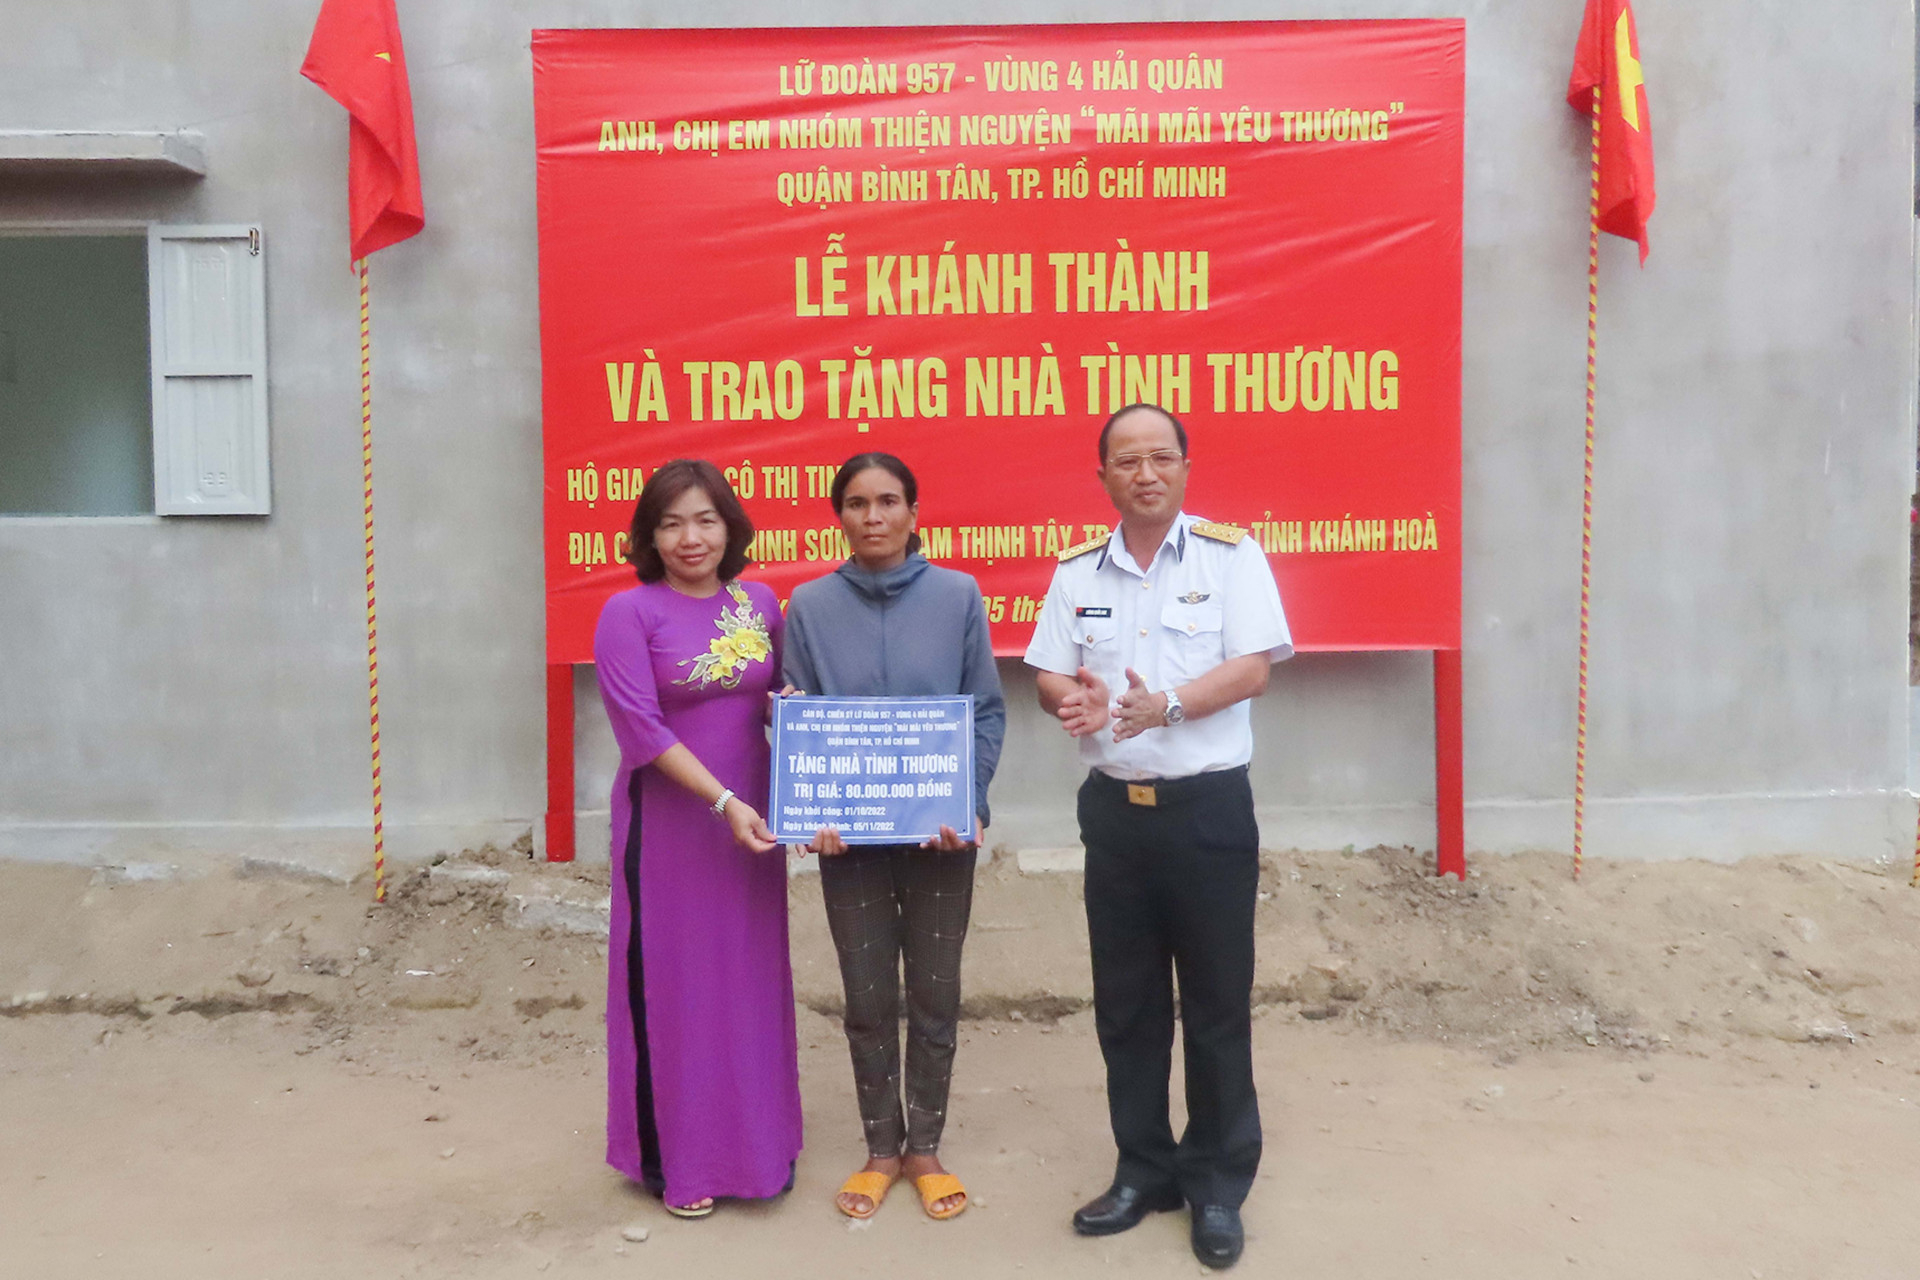 Chỉ huy Lữ đoàn 957 và nhóm thiện nguyện trao biểu trưng hỗ trợ xây nhà cho gia đình bà Thị Tinh.